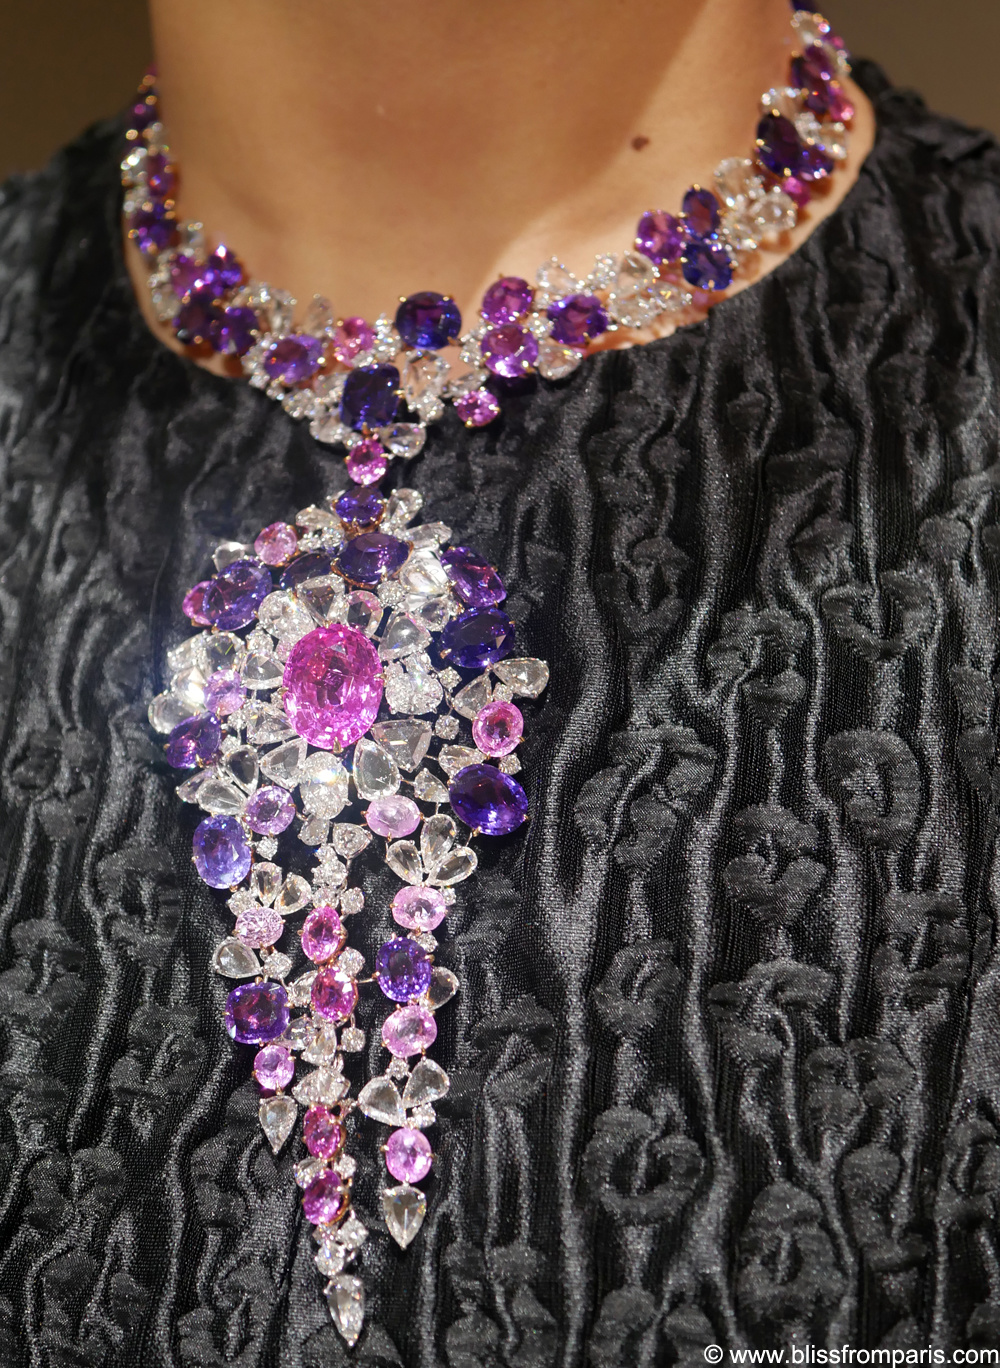 Moussaieff Jewellers , Collier avec des saphirs et diamants  © www.blissfromparis.com